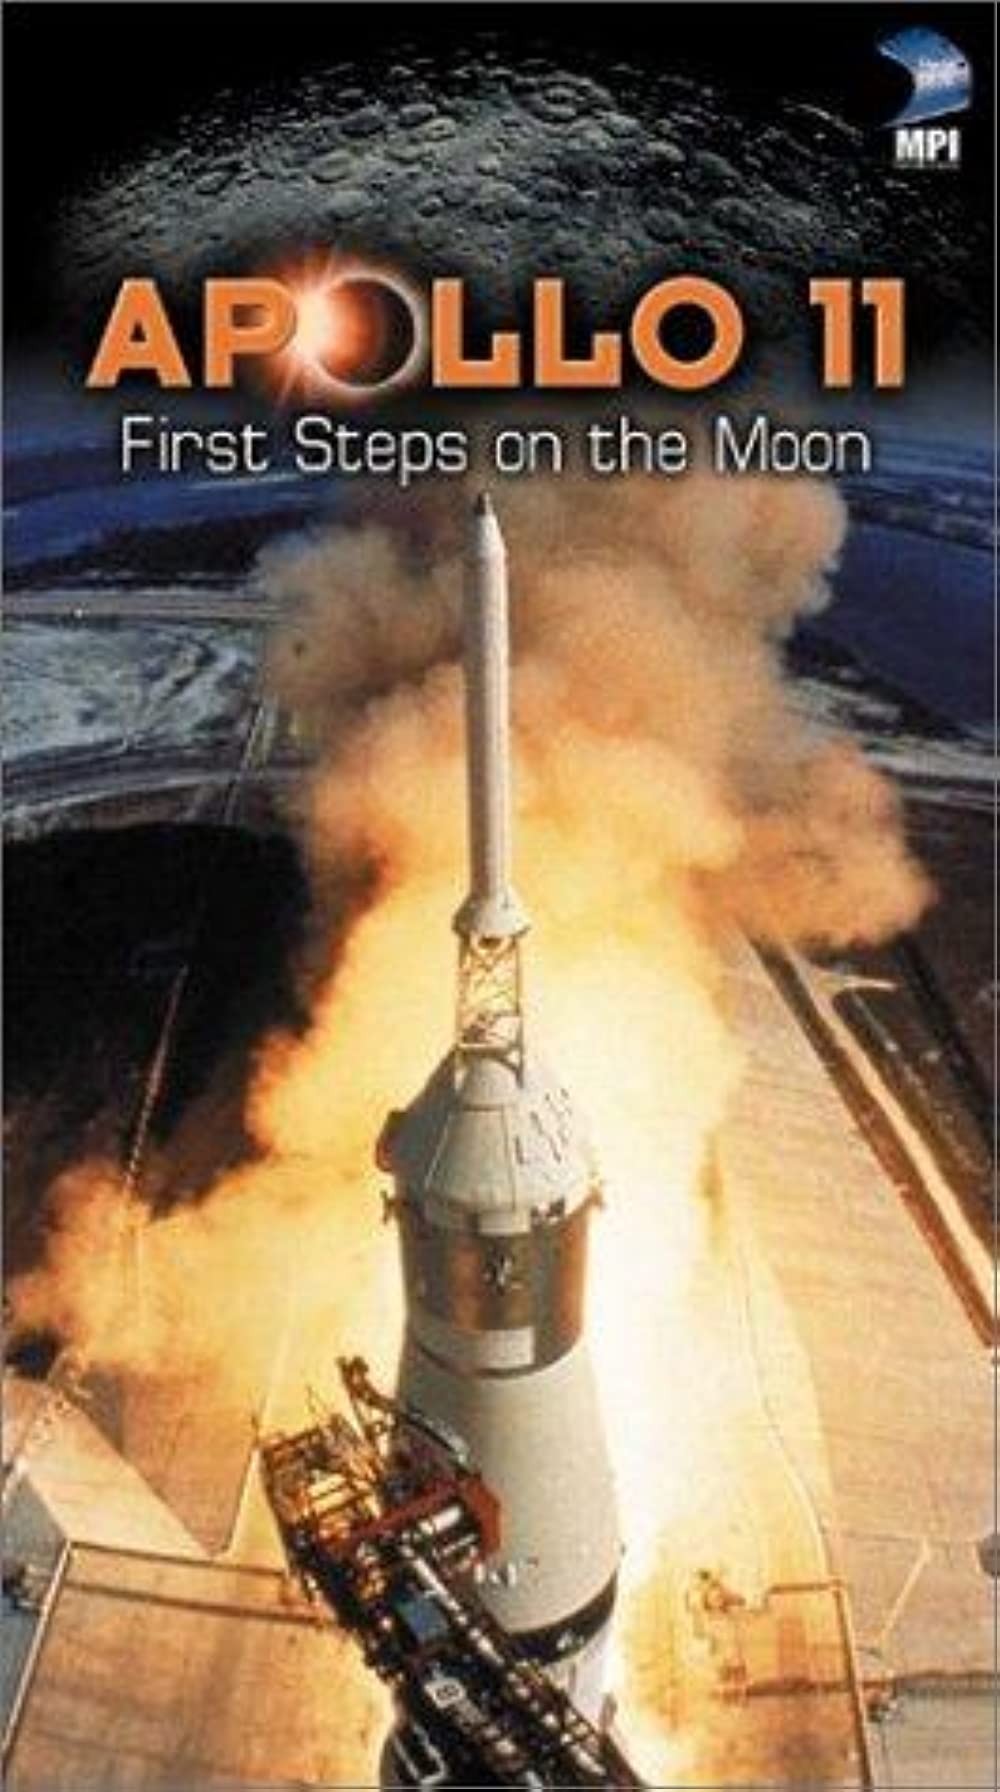 Filmbeschreibung zu Apollo 11 (1996)